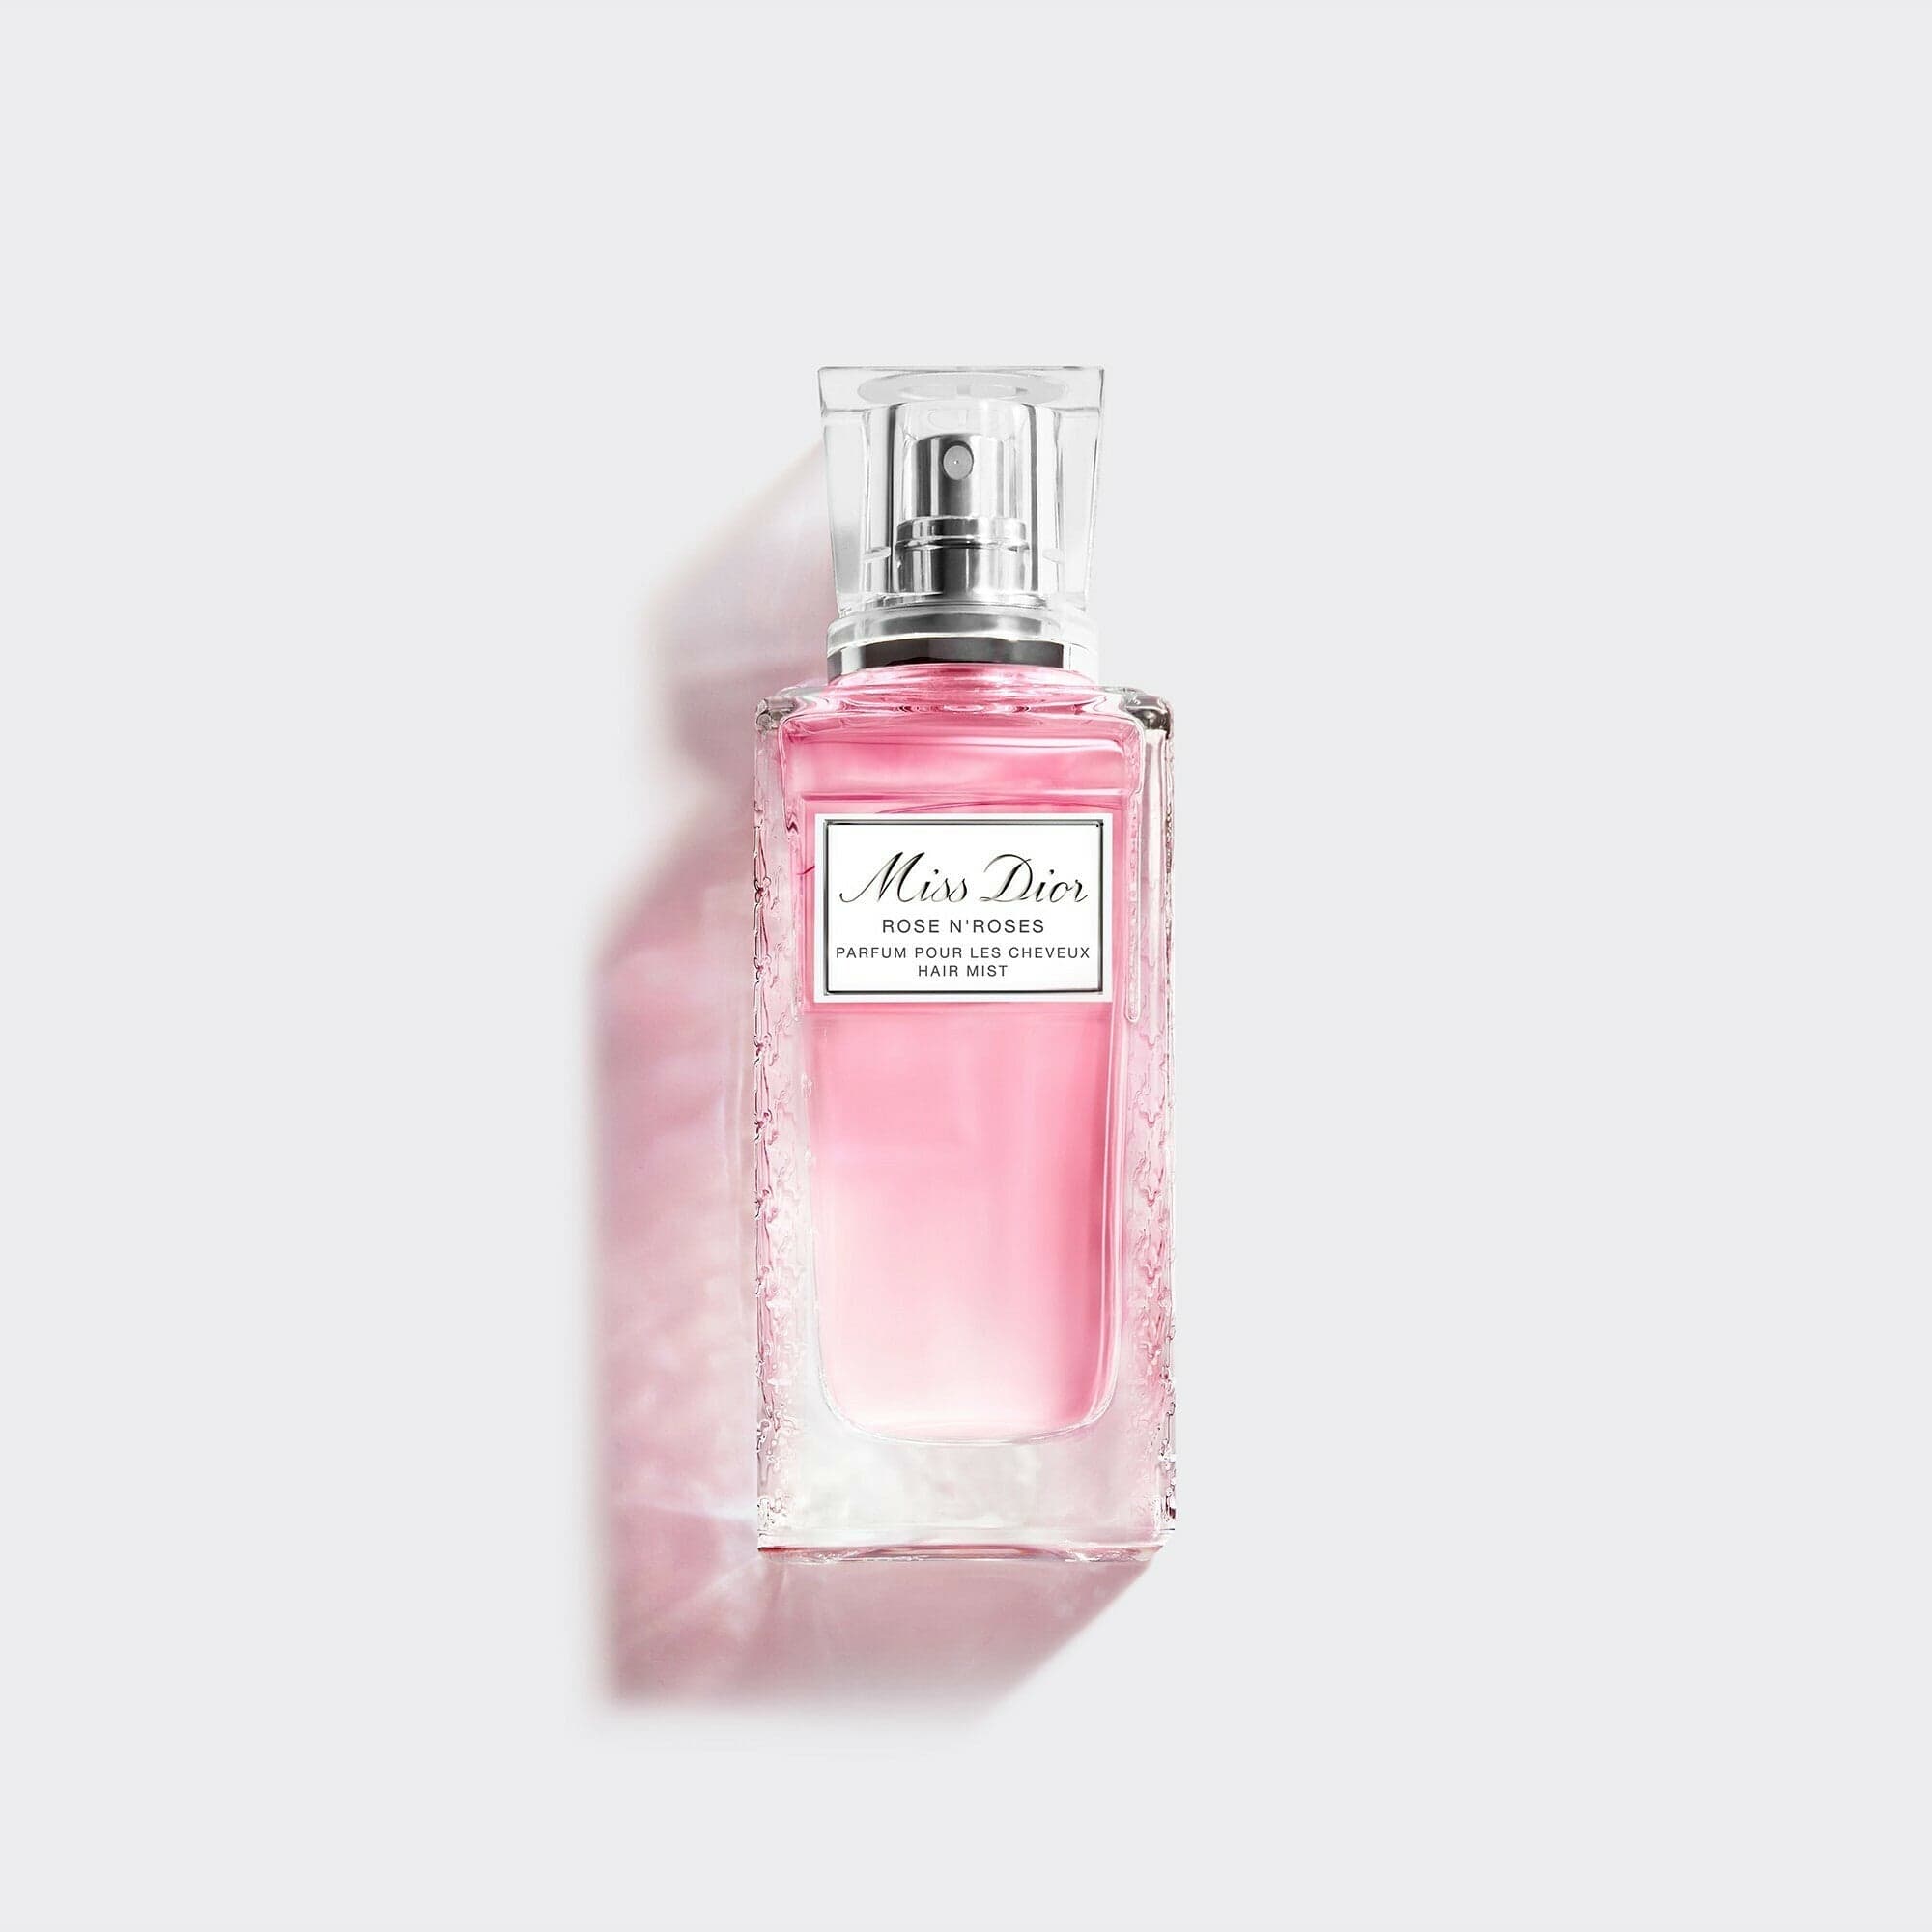 Beschrijving zeemijl verfrommeld MISS DIOR | Hair mist – Parfums Christian Dior HK Ltd